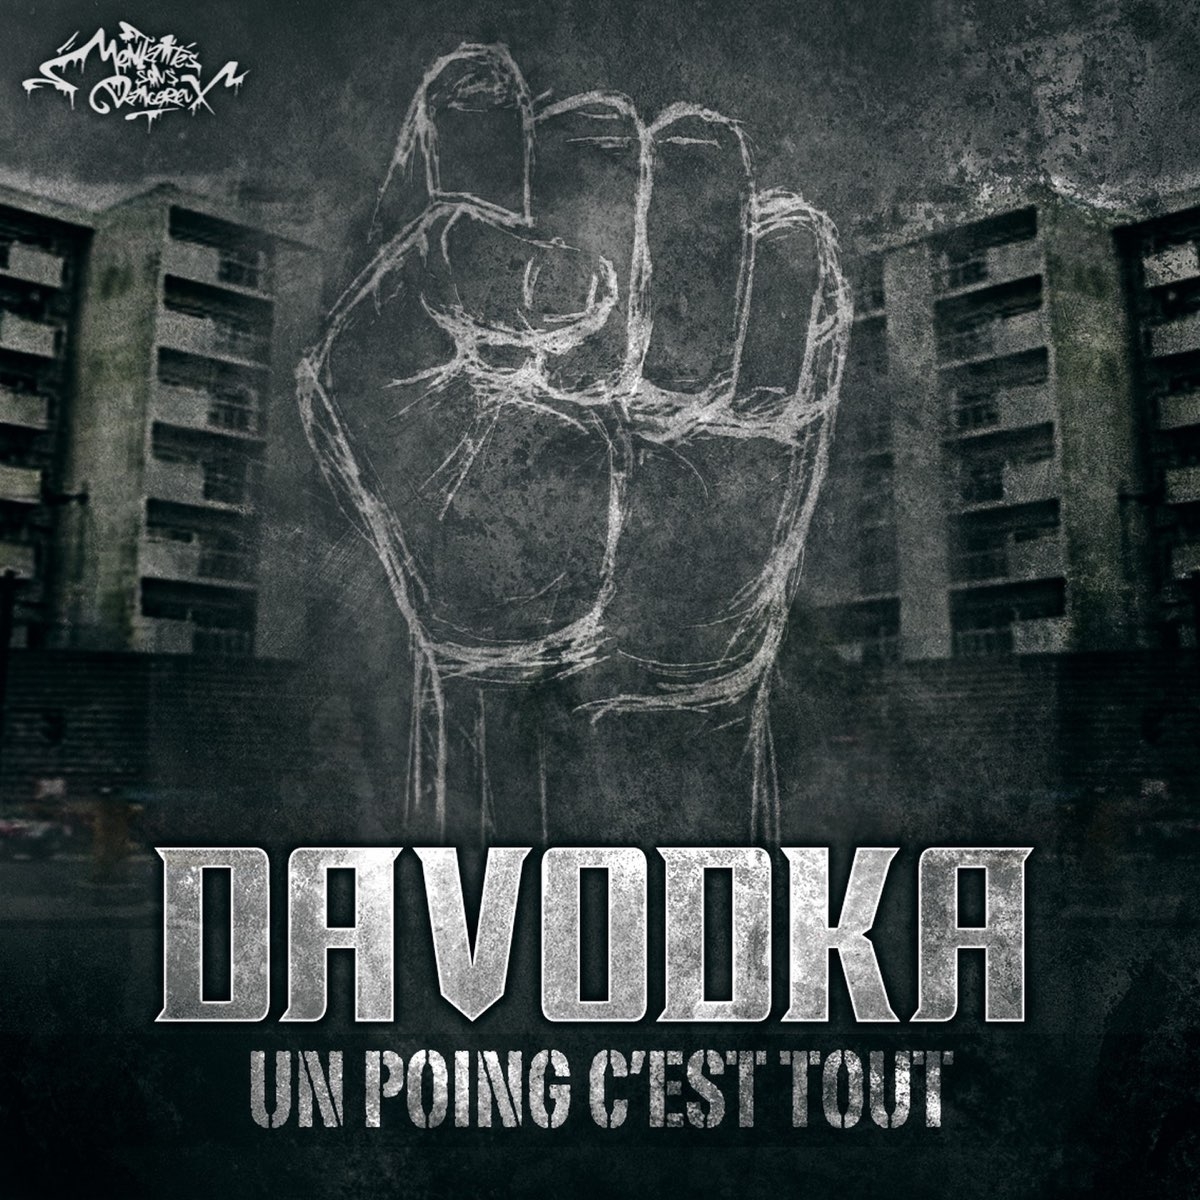 album vinyles davodka - un poing c'est tout de davodka sur Scredboutique.com